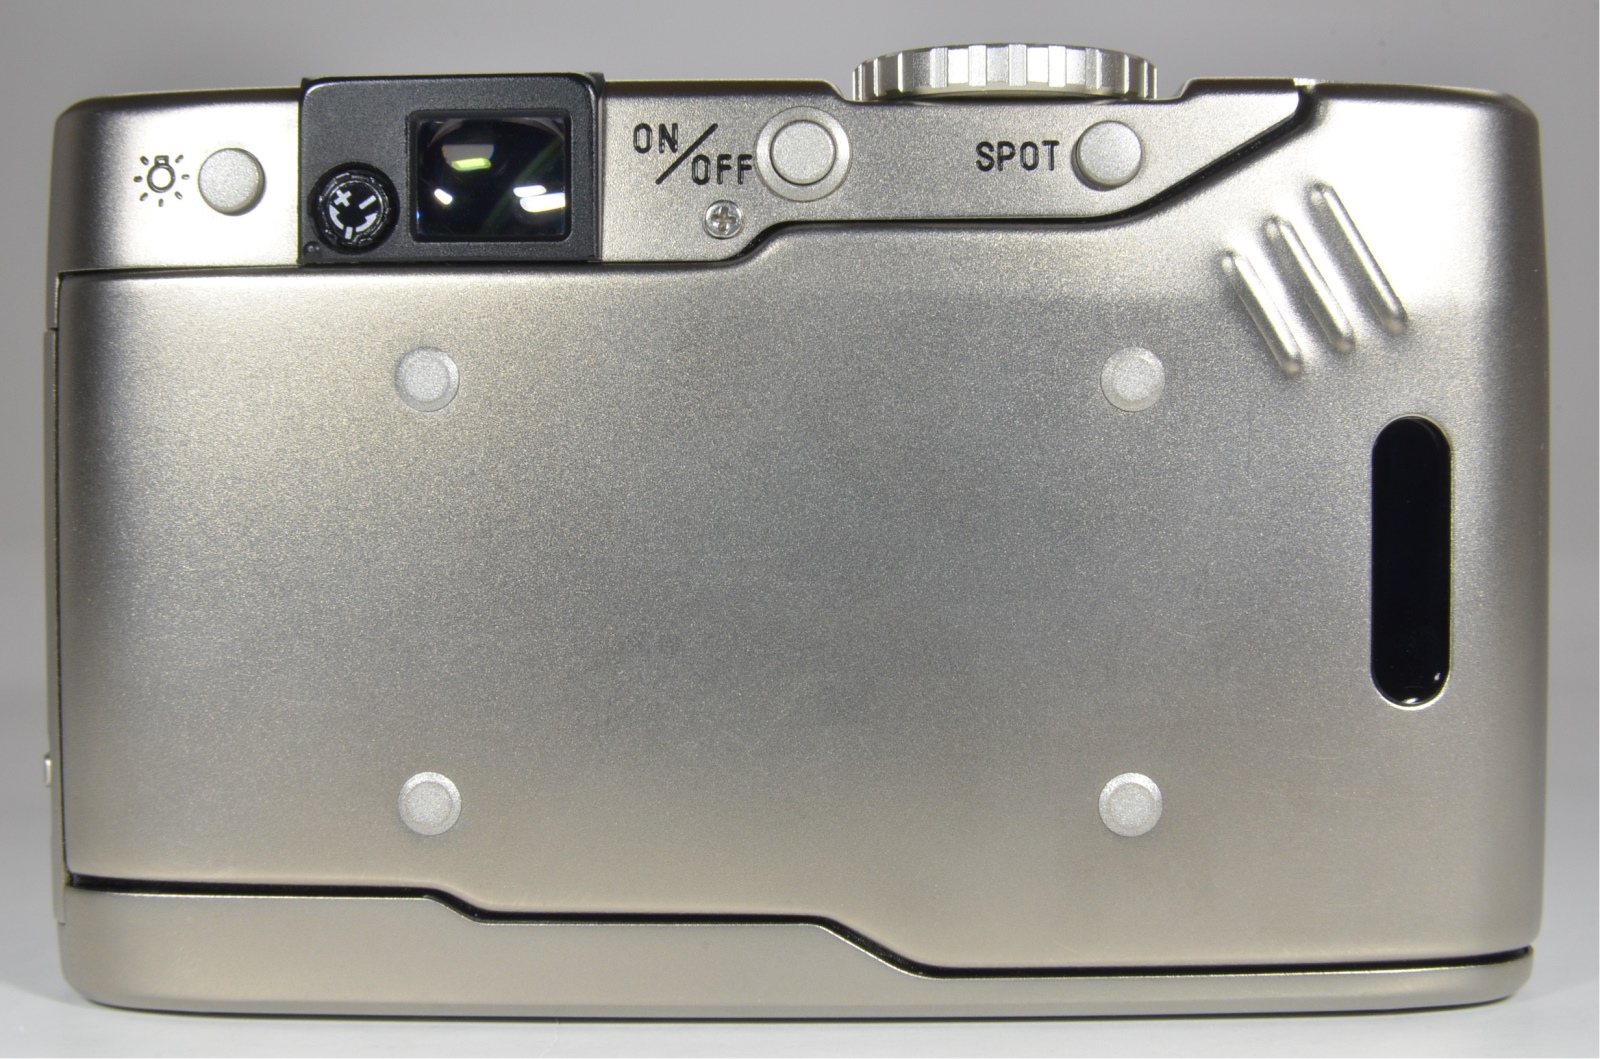 minolta tc-1 film camera in boxed